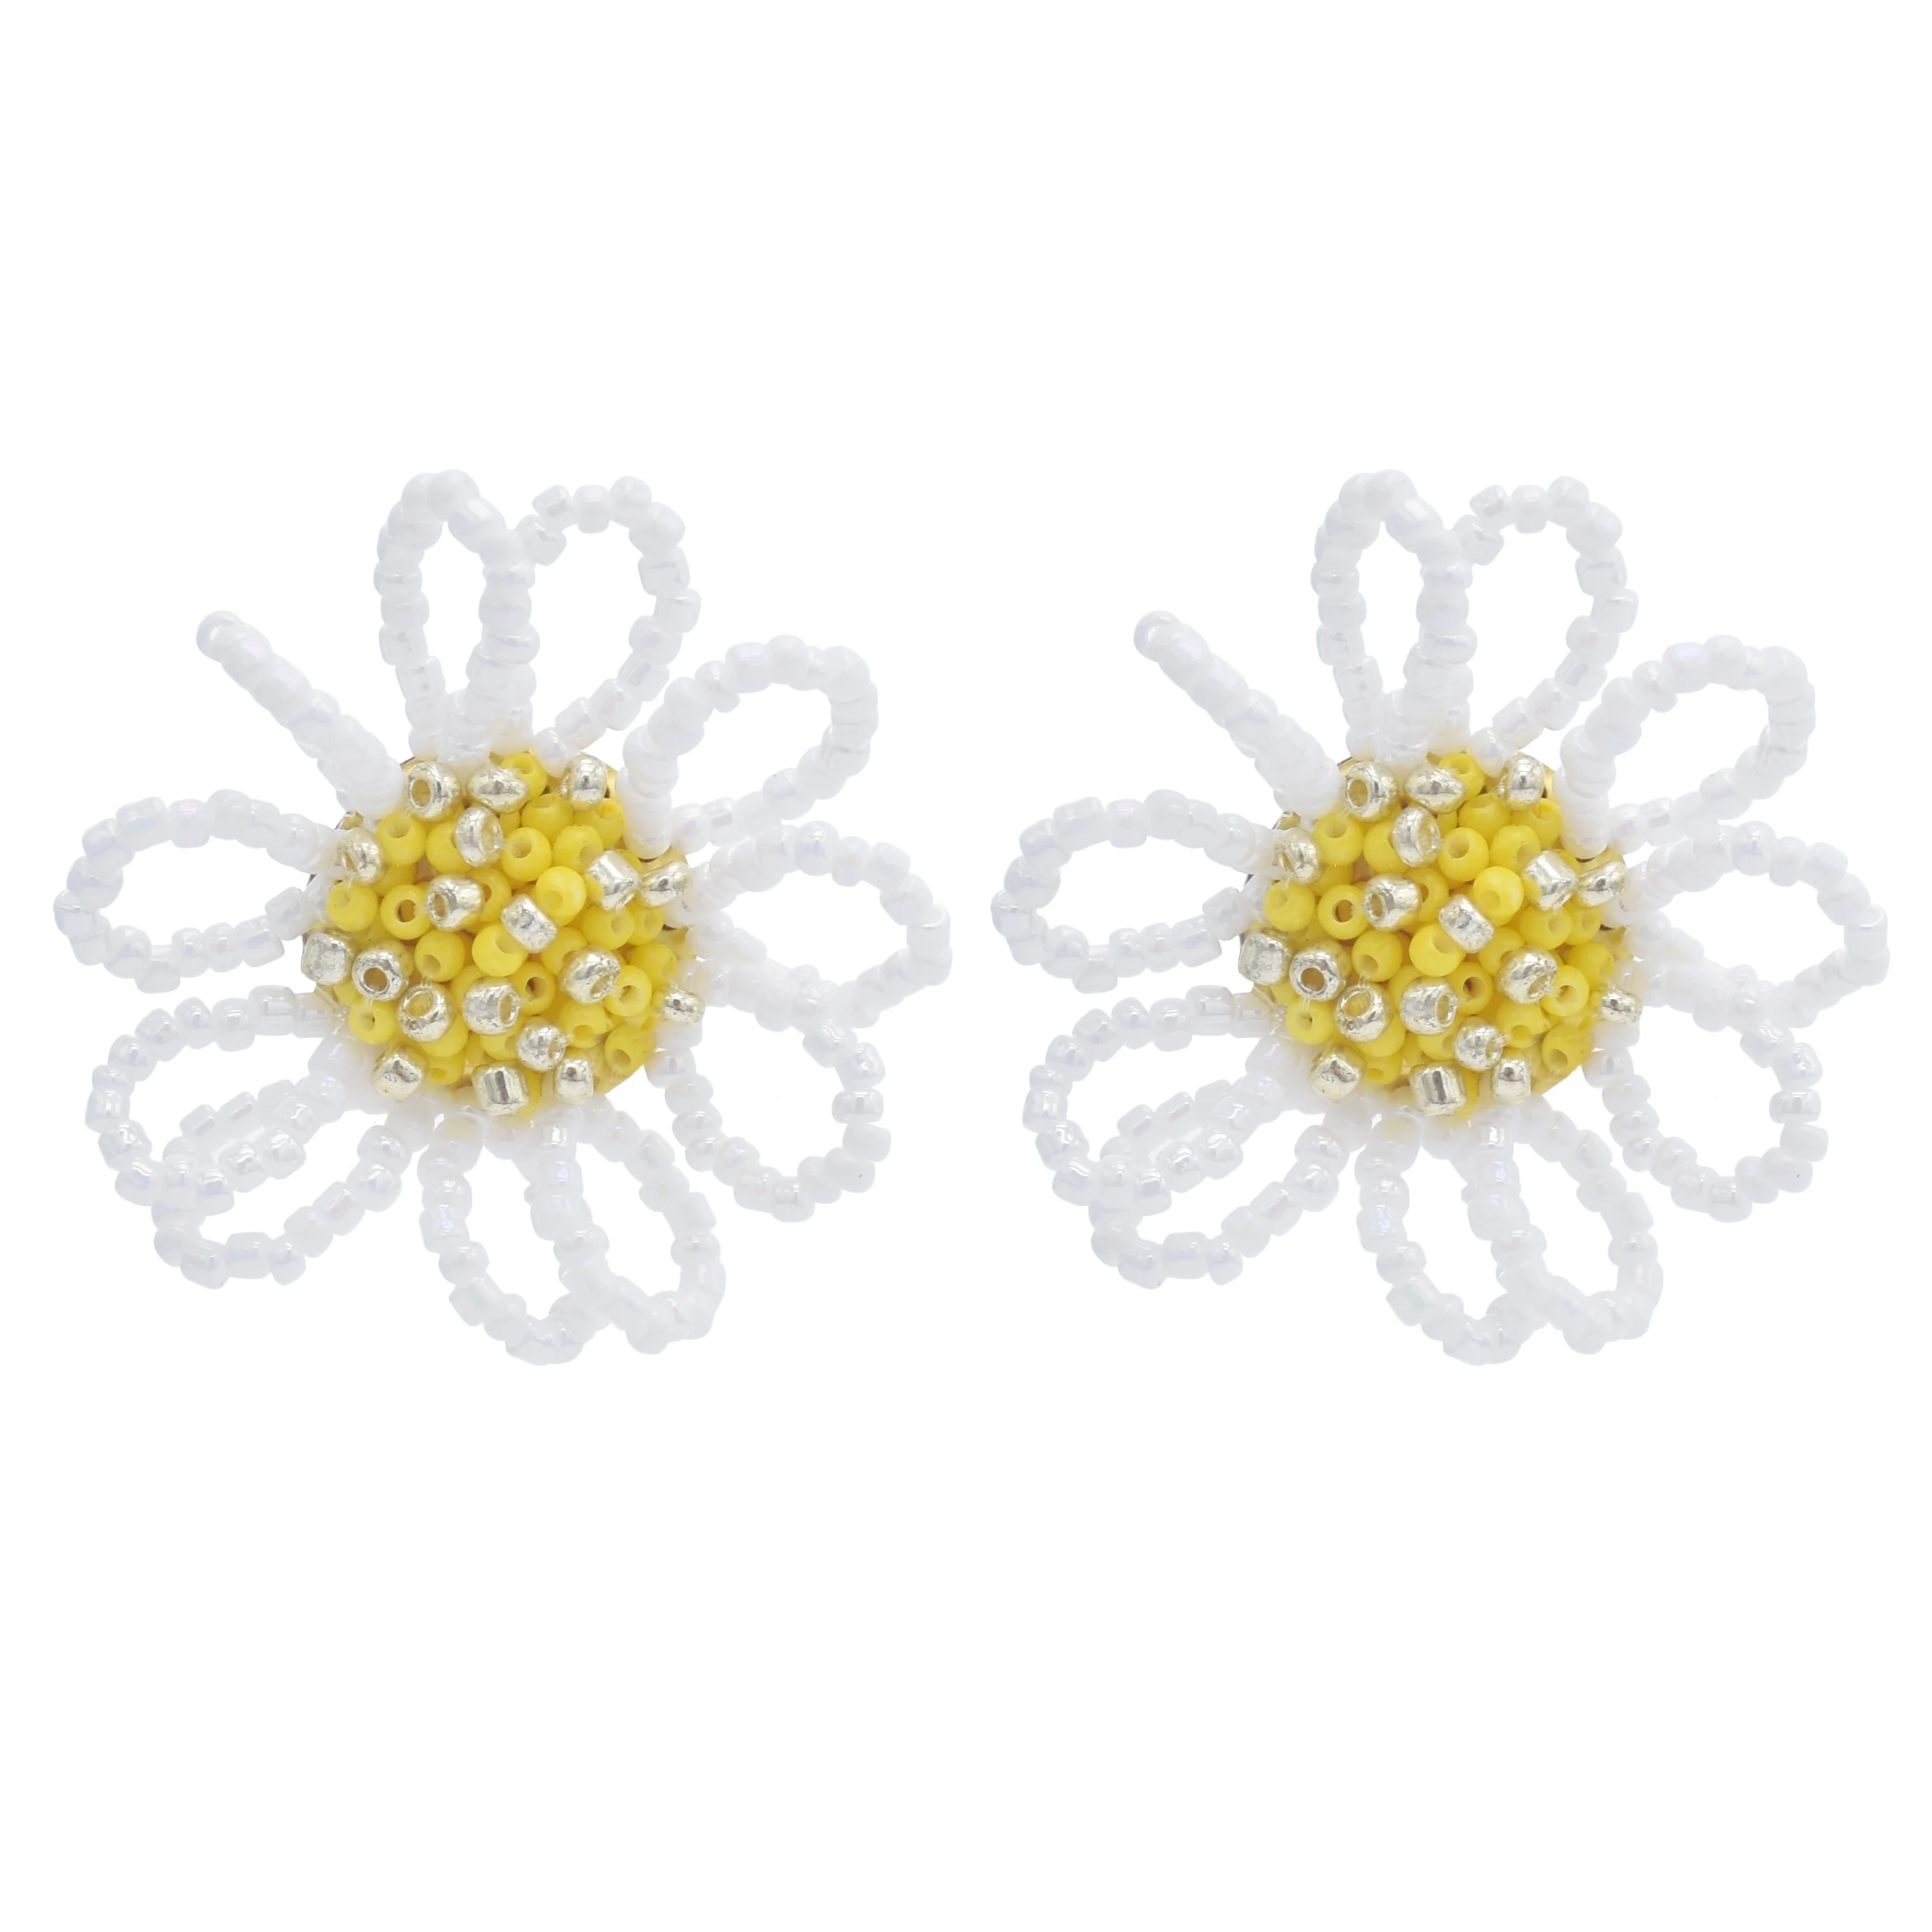 

New Designs 925 Silver Earrings Women Jewelry Wholesale Flower Hoop Earrings Fashion Earring women, Black, yellow